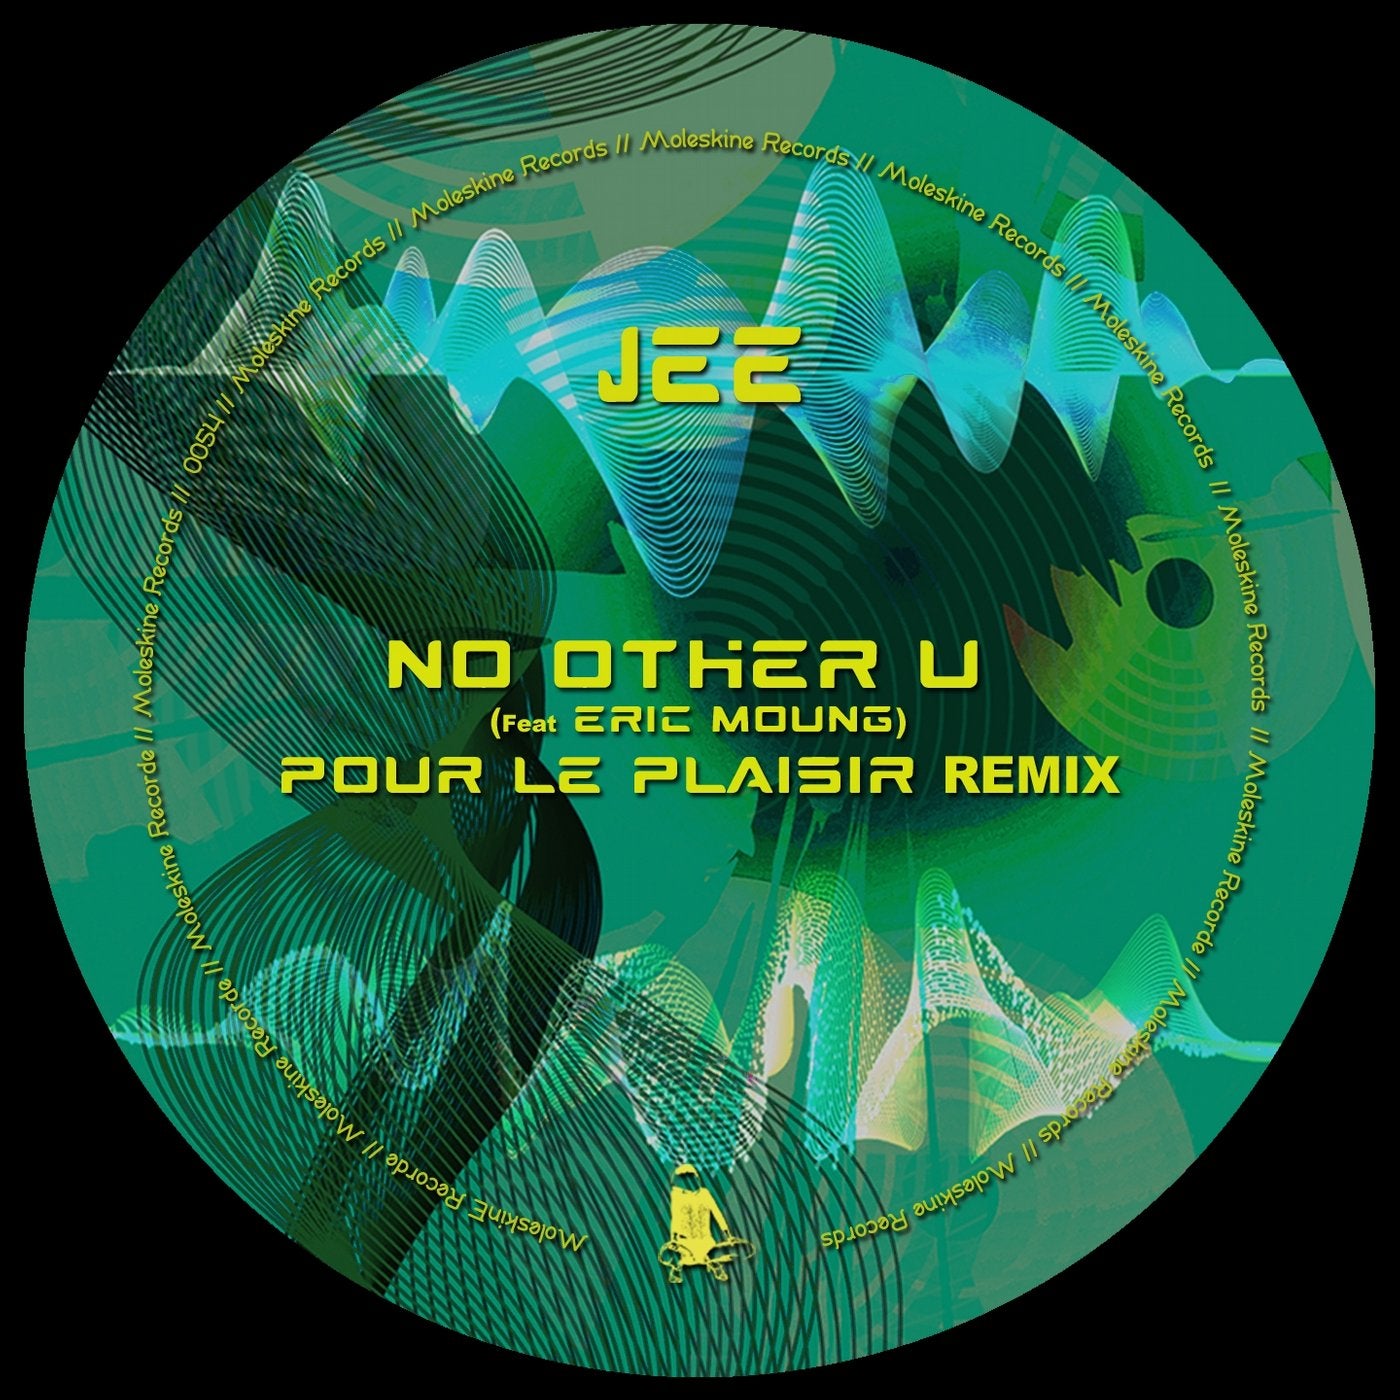 No Other U (feat. Eric Moung) [Pour Le Plaisir Remix]